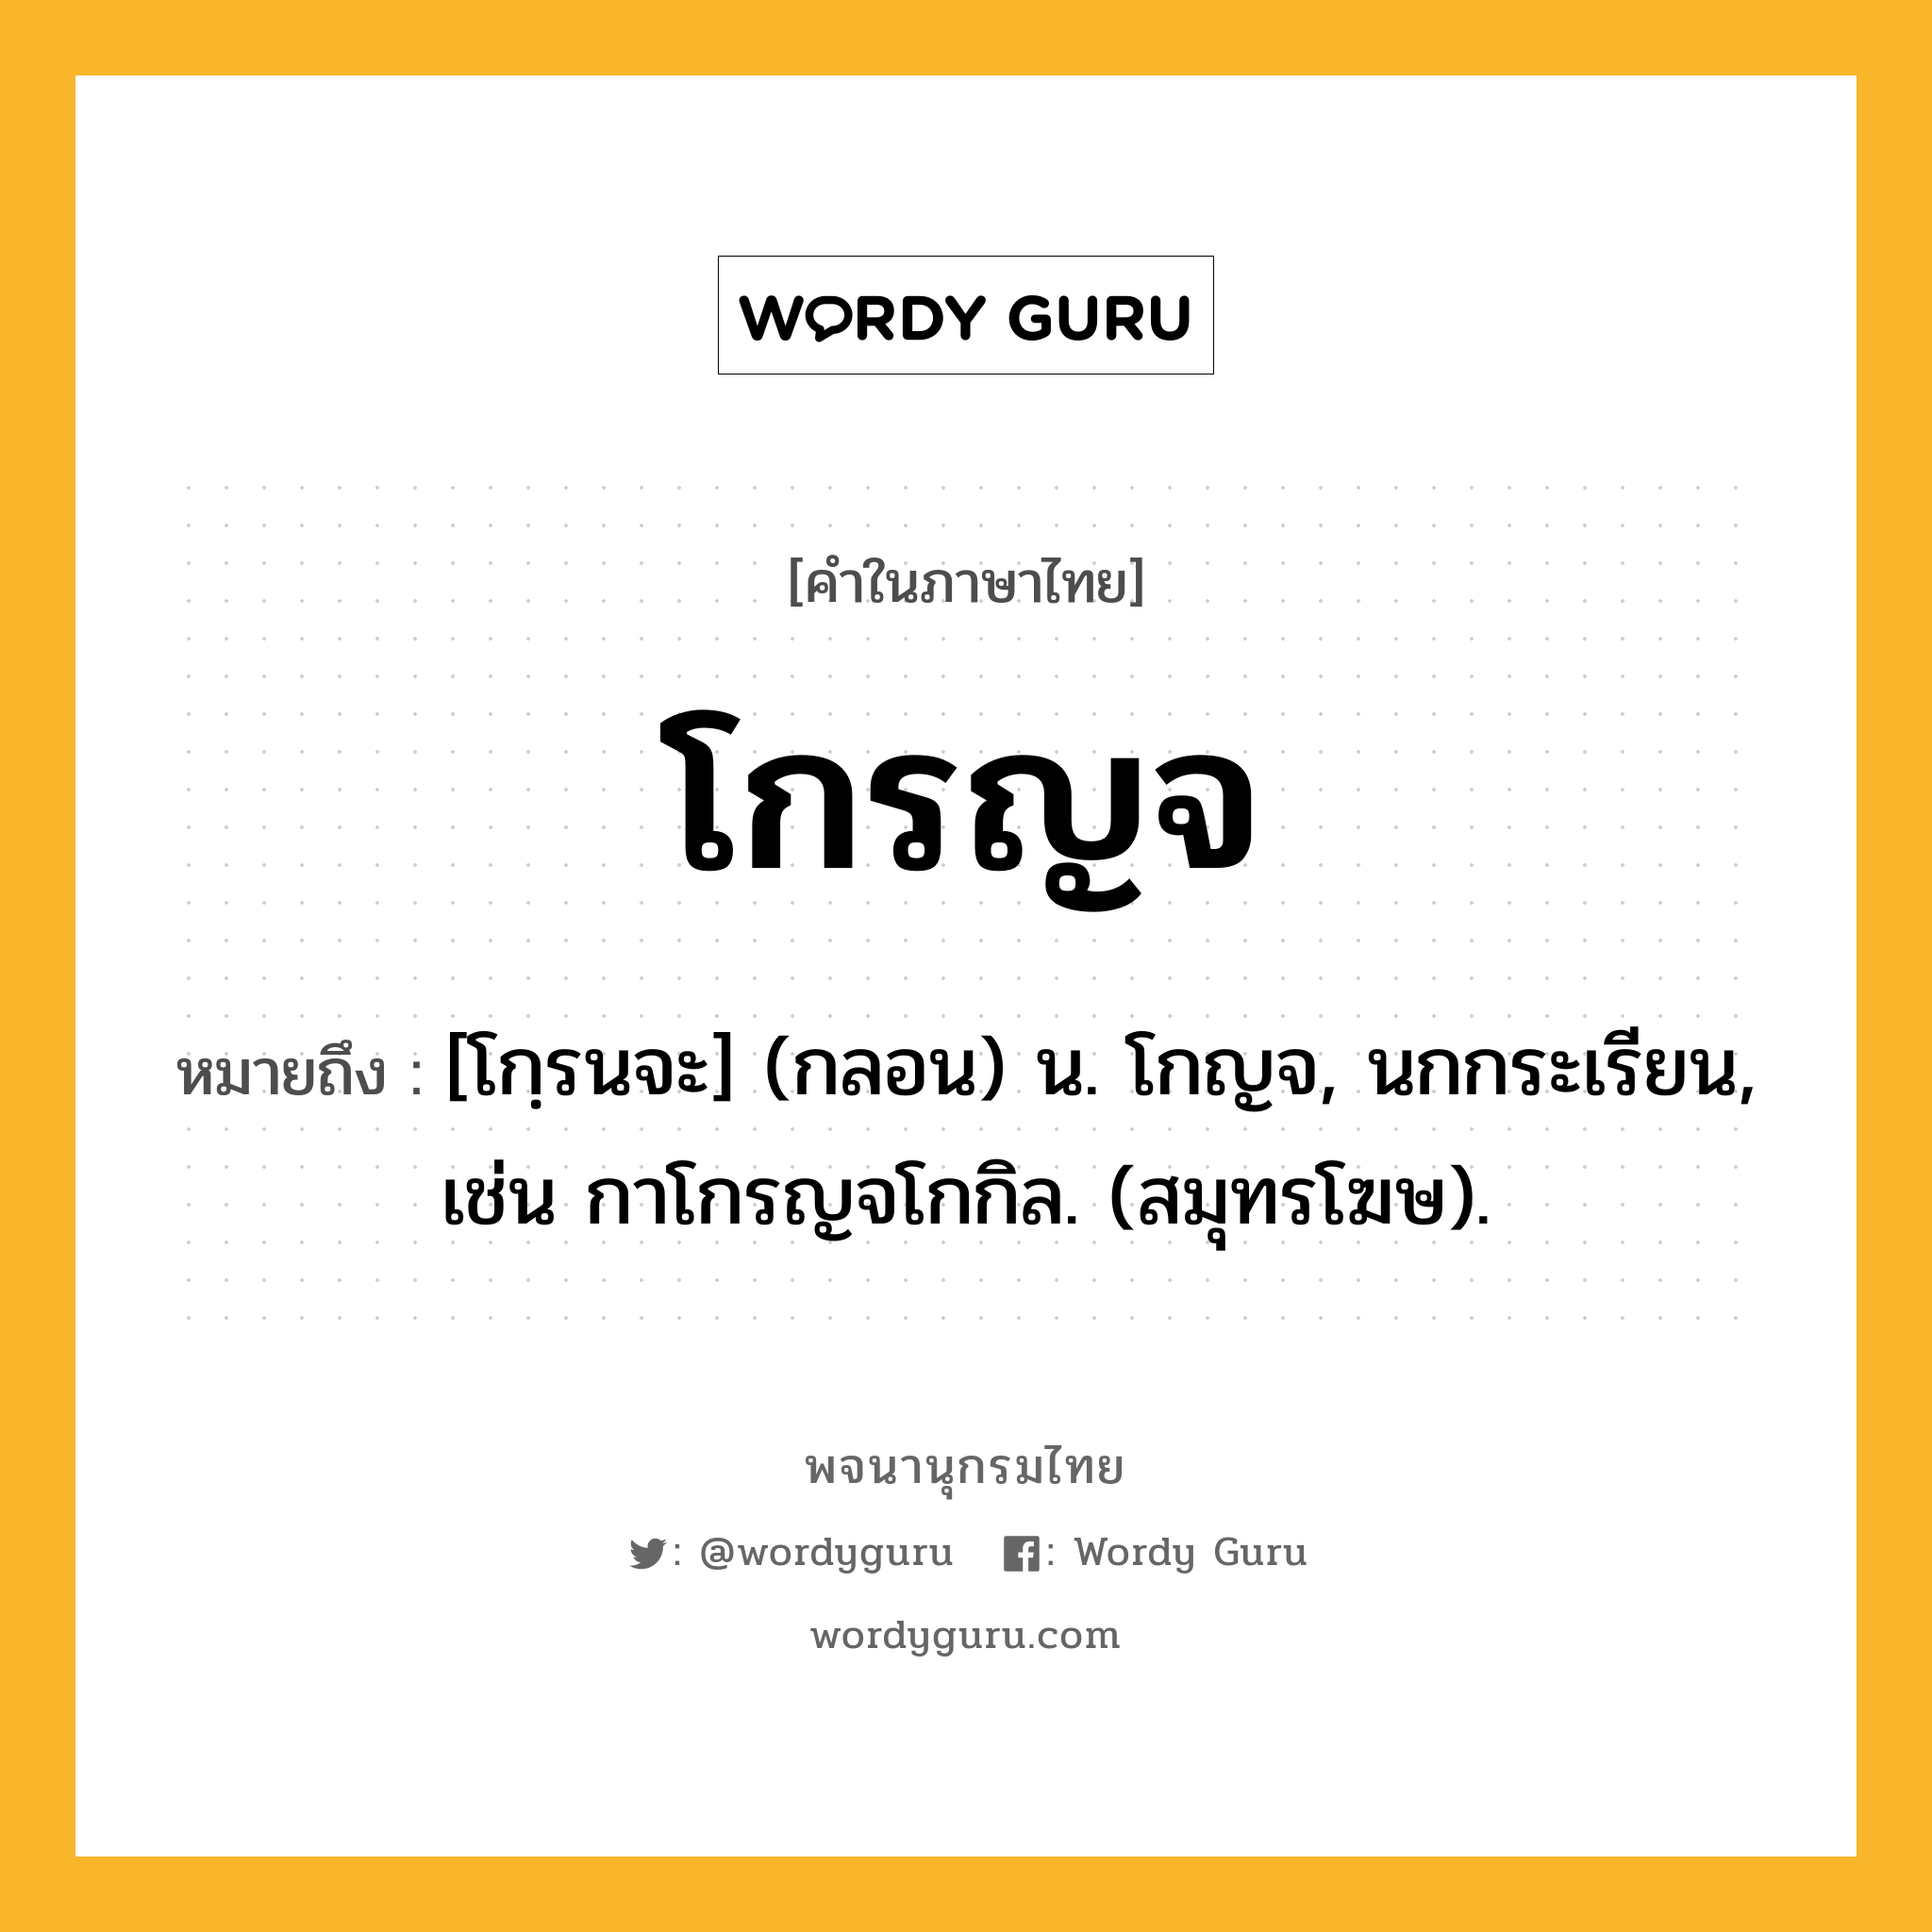 โกรญจ หมายถึงอะไร?, คำในภาษาไทย โกรญจ หมายถึง [โกฺรนจะ] (กลอน) น. โกญจ, นกกระเรียน, เช่น กาโกรญจโกกิล. (สมุทรโฆษ).